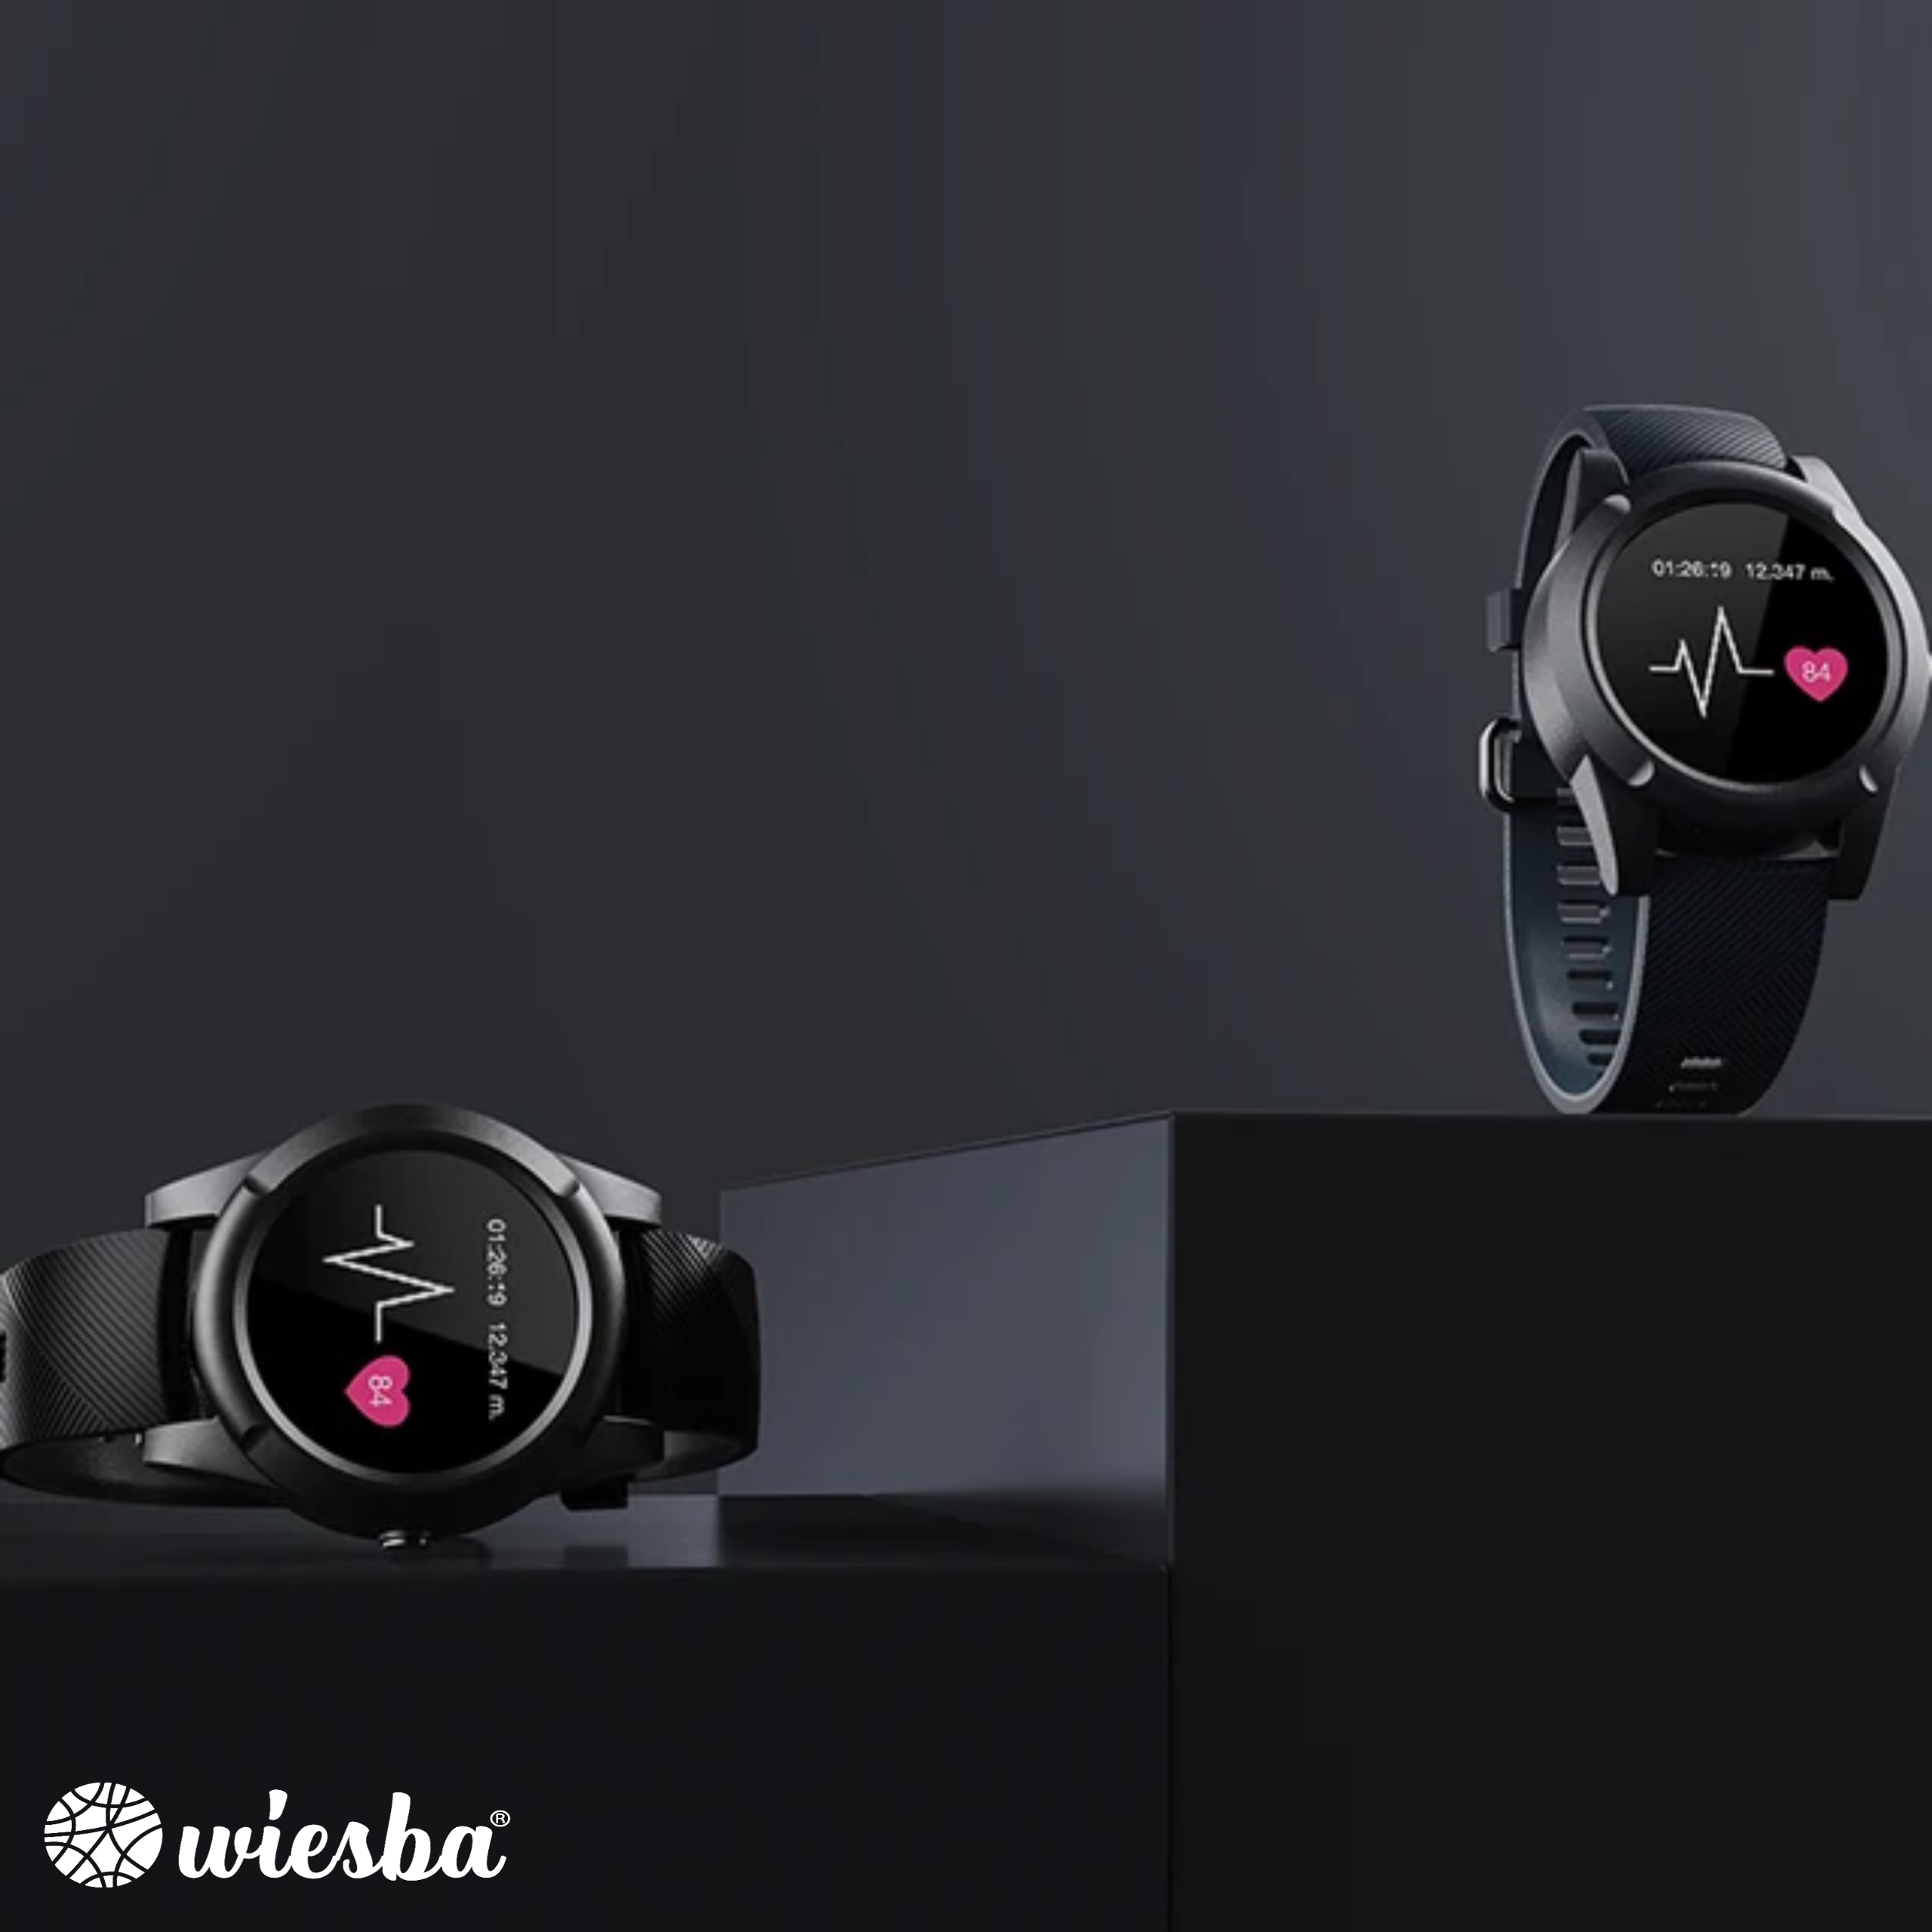 Wiesba WB57S senior smartwatch